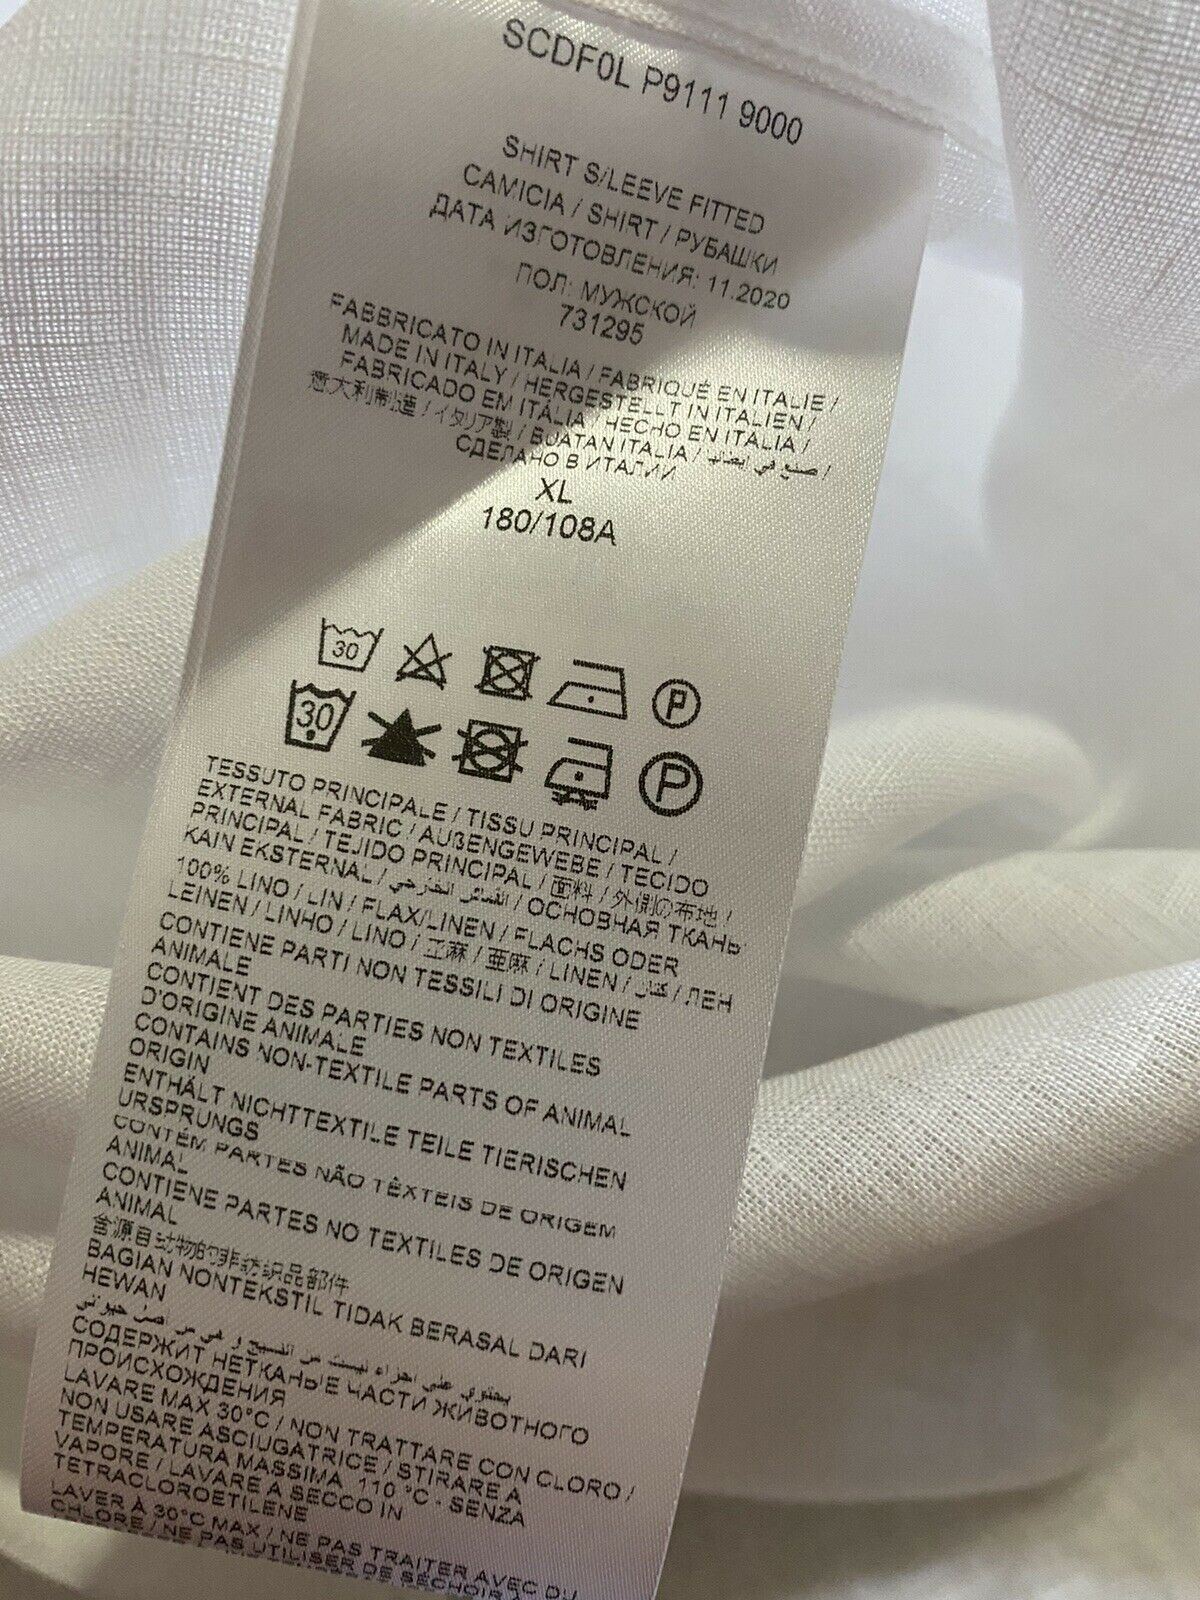 Neu mit Etikett: 500 $ Brioni Herren-Leinenhemd mit sortierten Ärmeln, Weiß, Größe XL, Italien